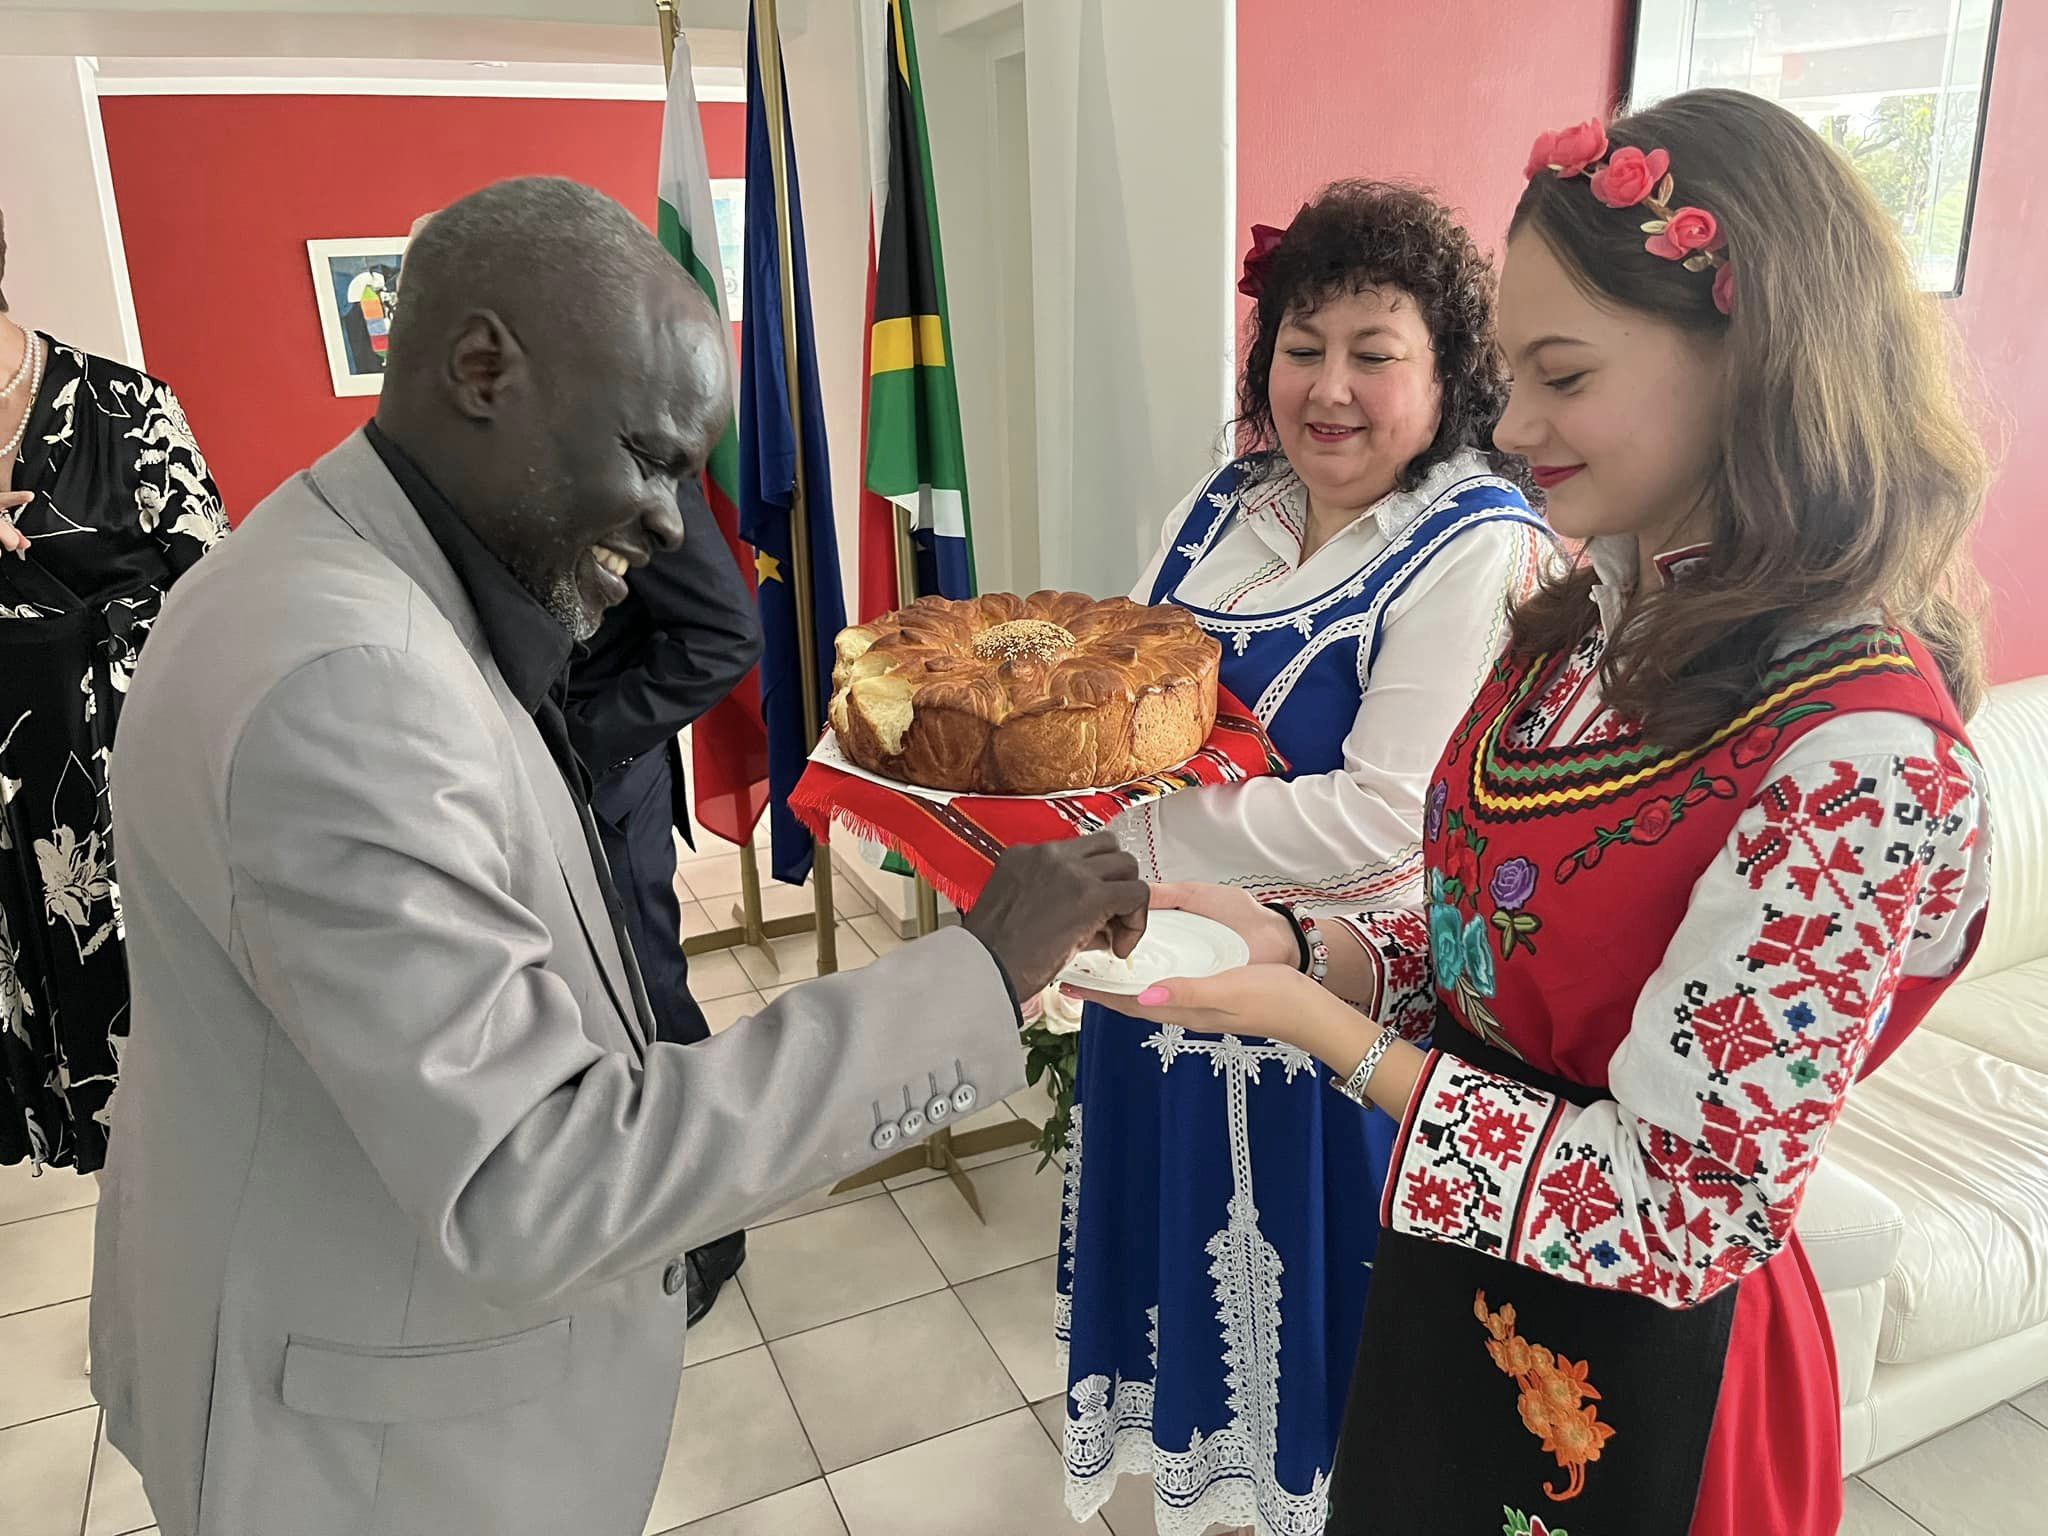 Прием по повод Националния празник на Р България – 3 март в резиденцията на българския посланик в Претория, Южна Африка